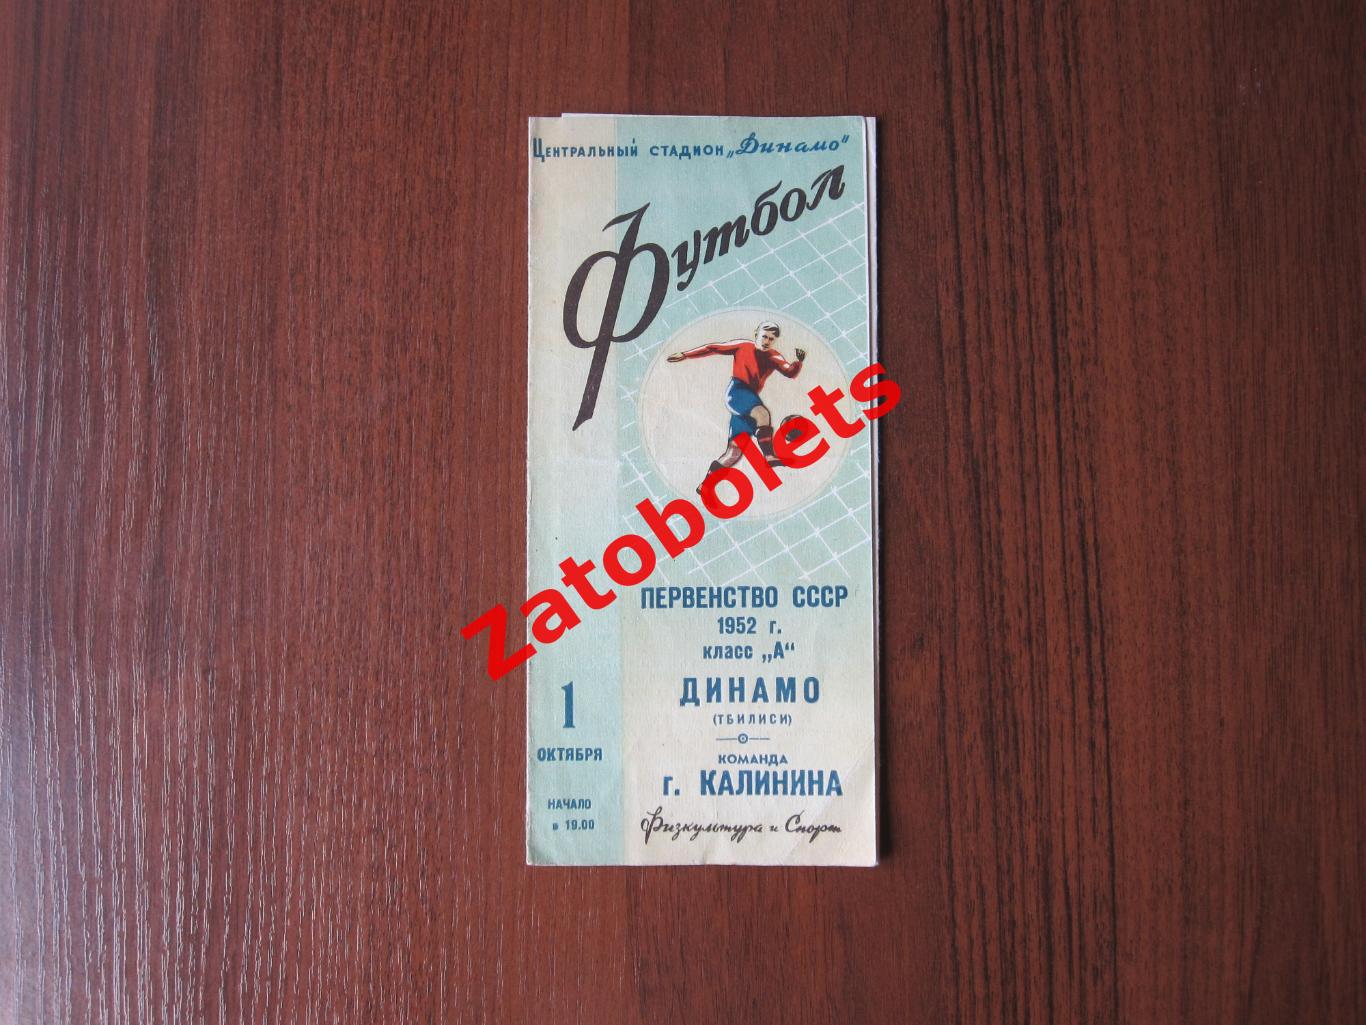 Динамо Тбилиси - команда г.Калинина 1952